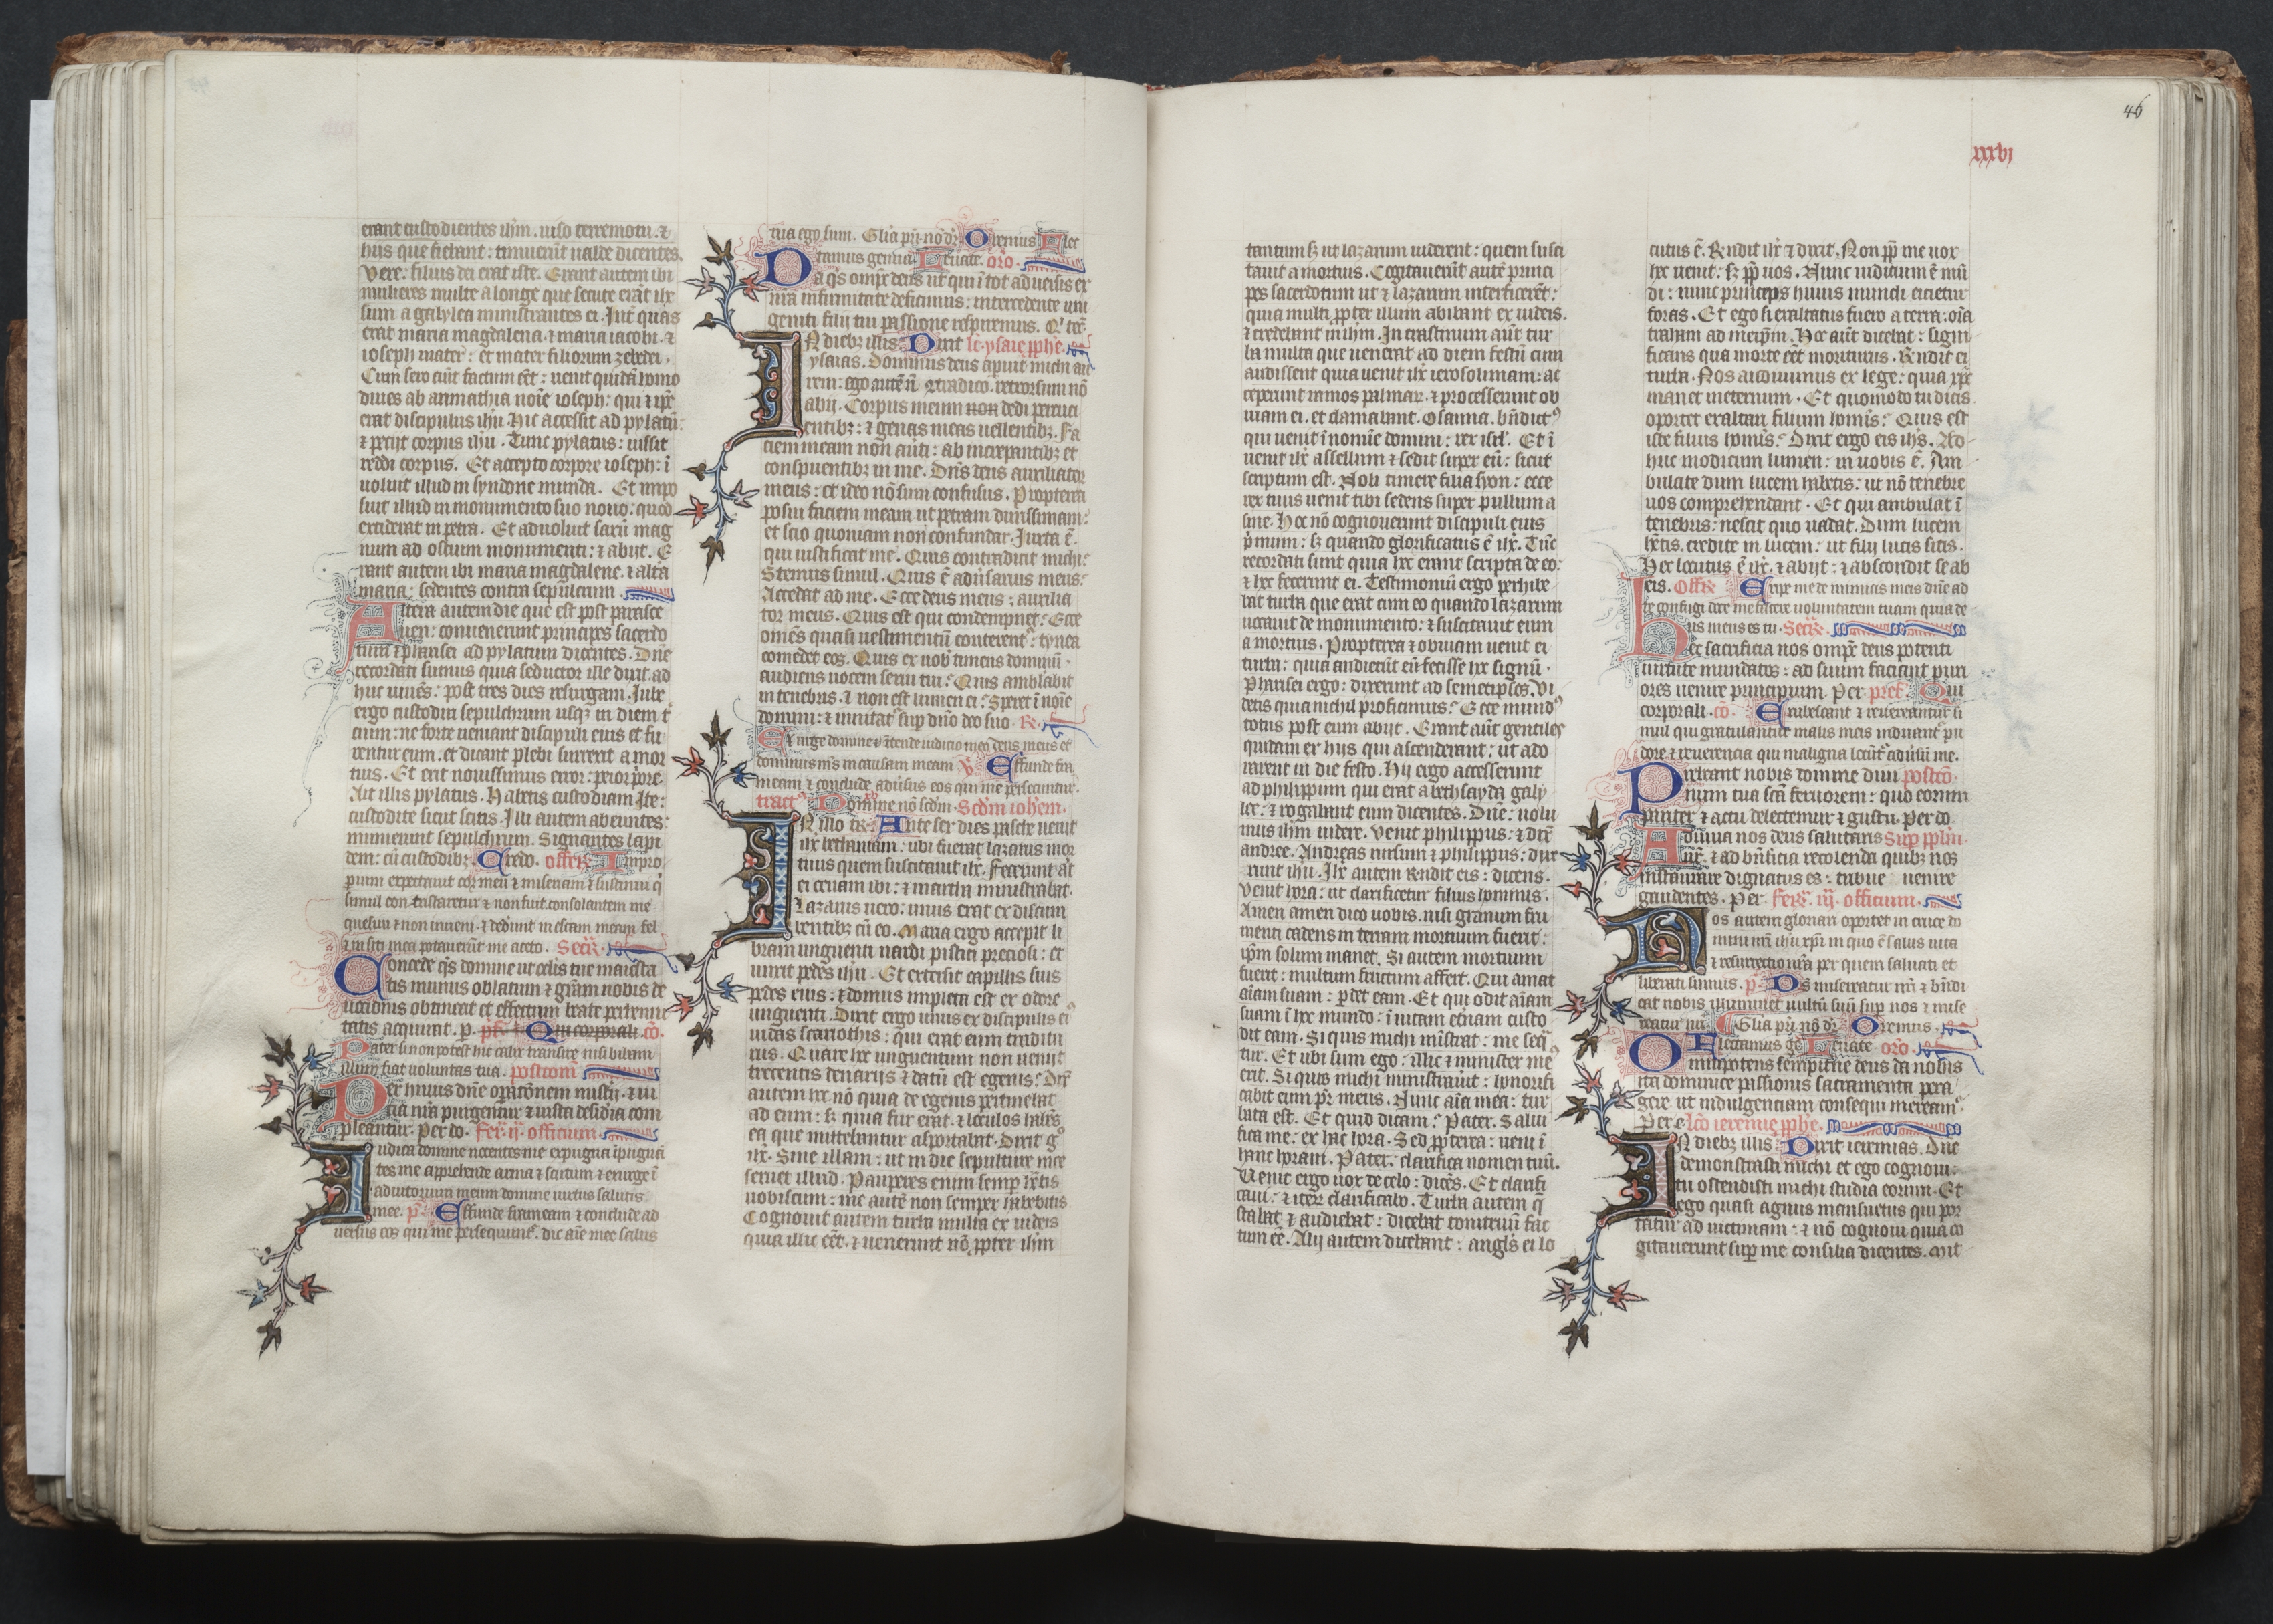 The Gotha Missal:  Fol. 46r, Text